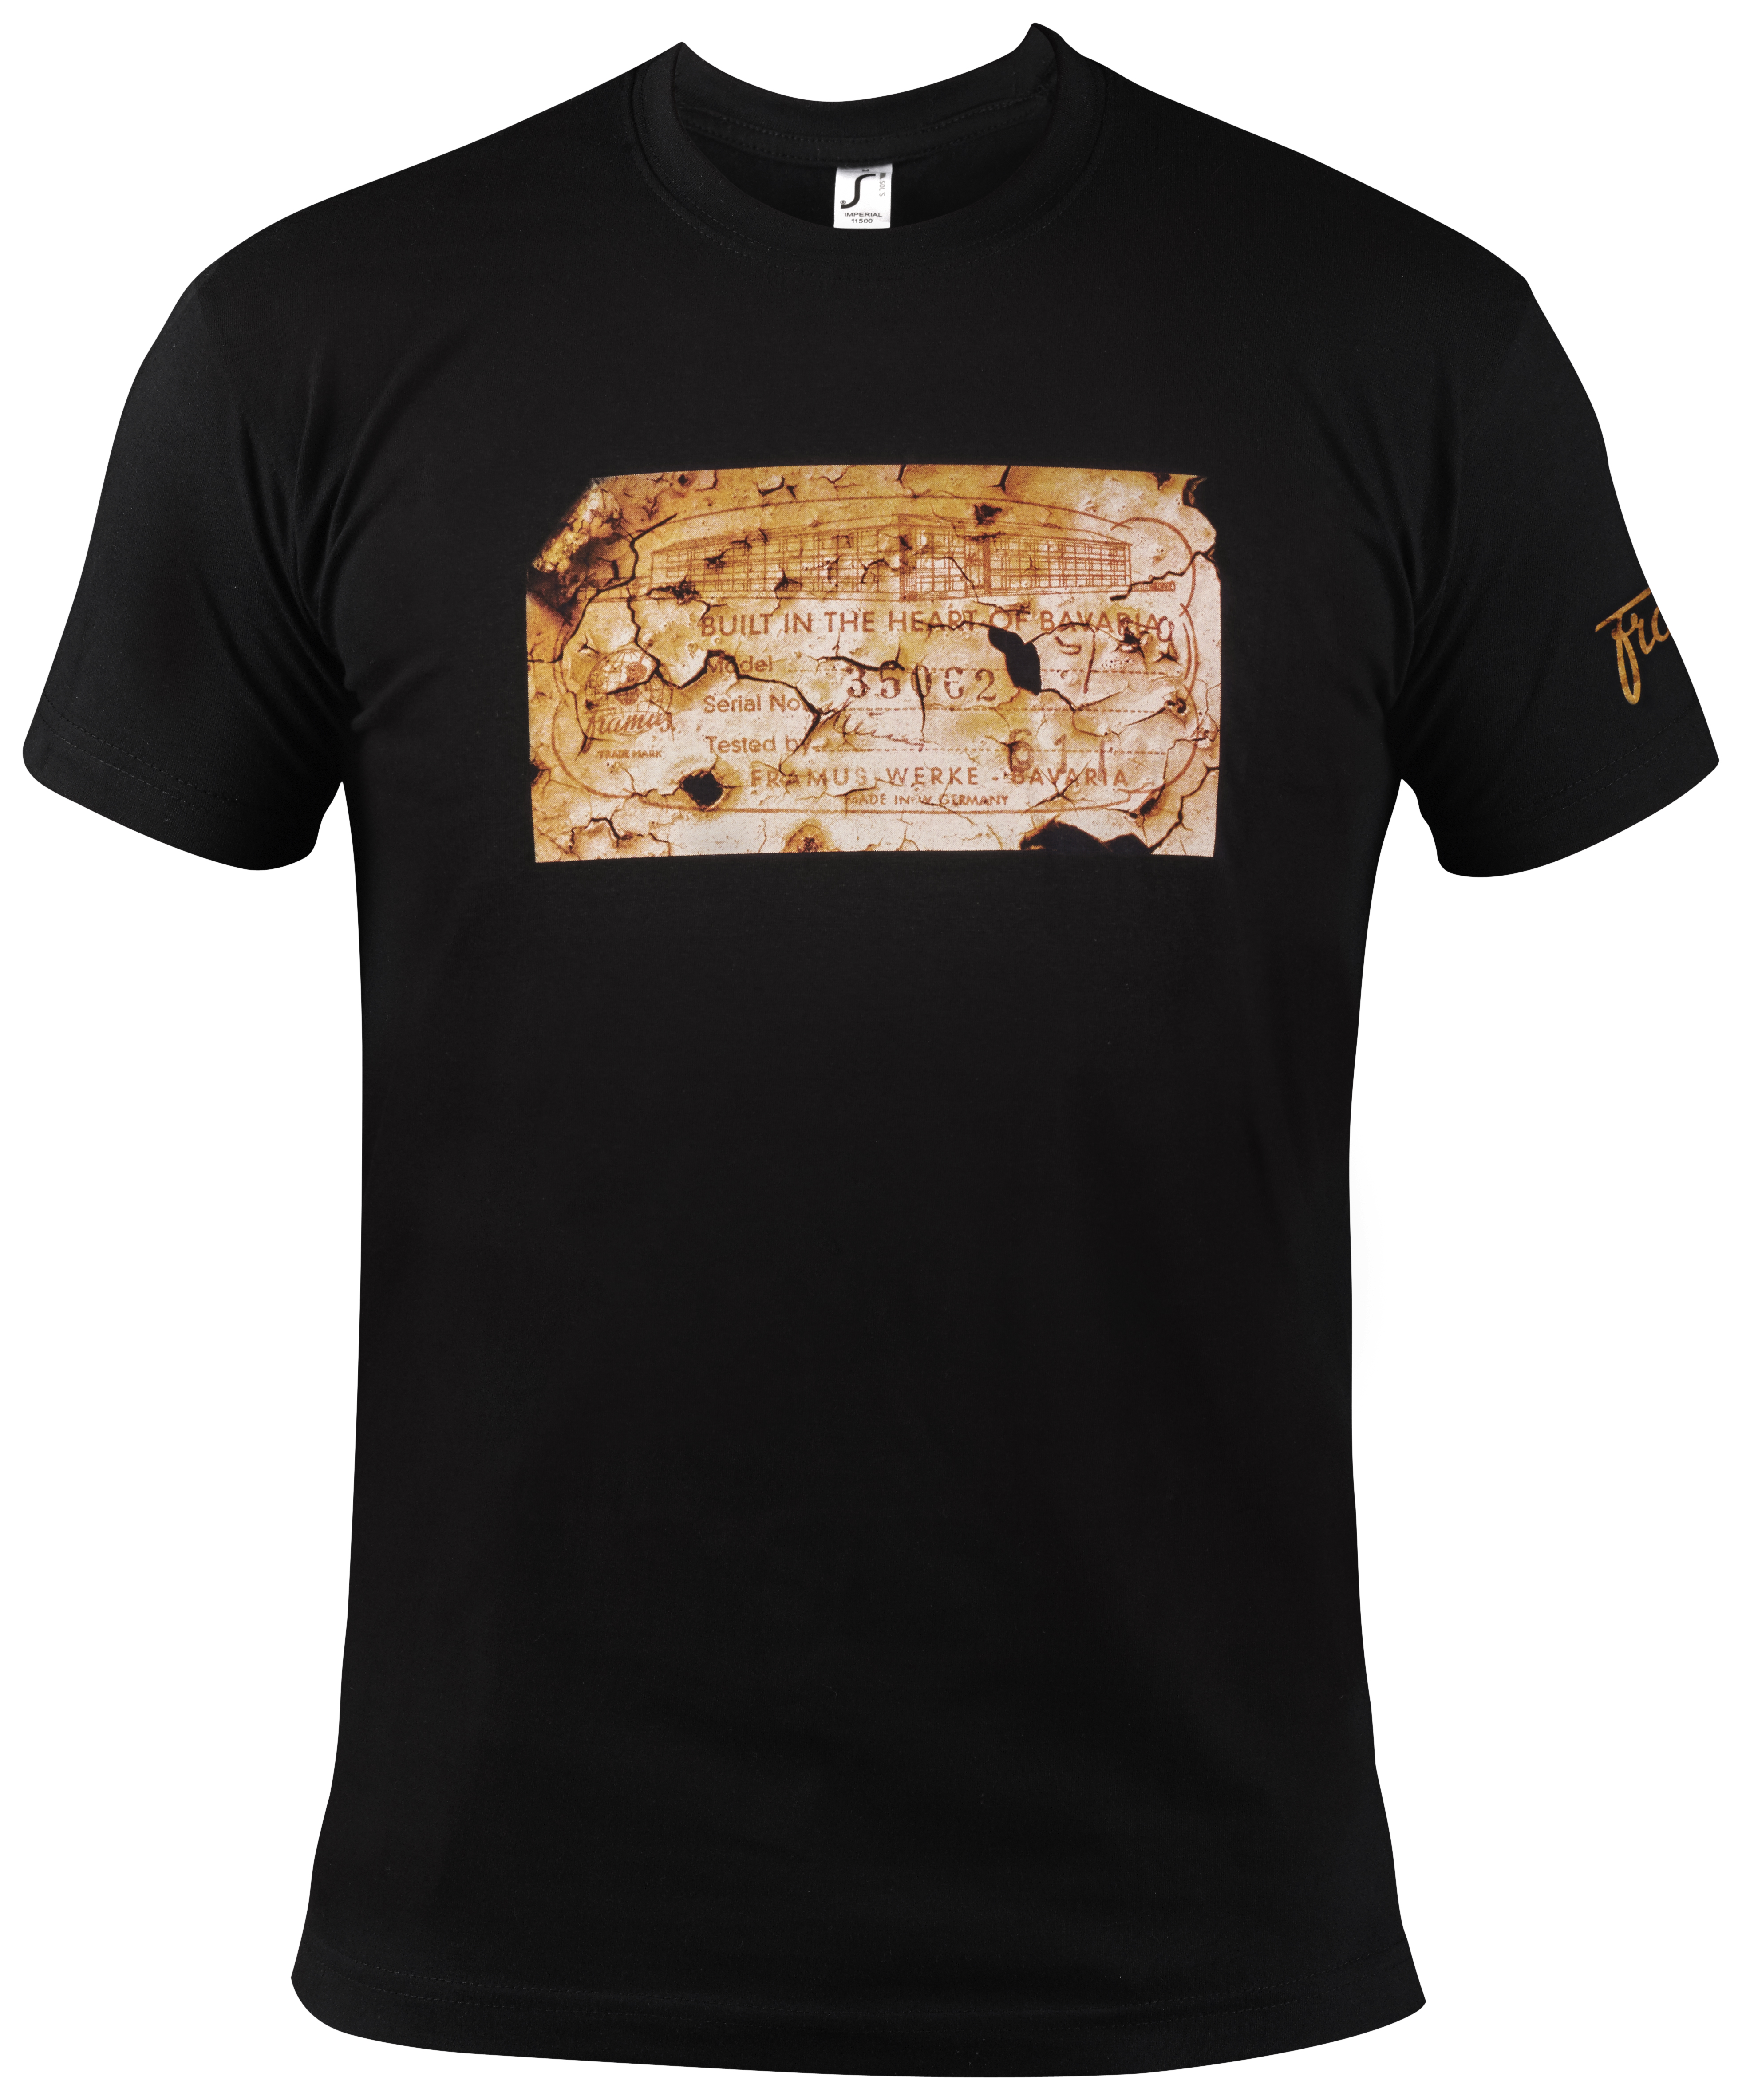 Framus Promo - Vintage Label - T-Shirt - Male / Size: S